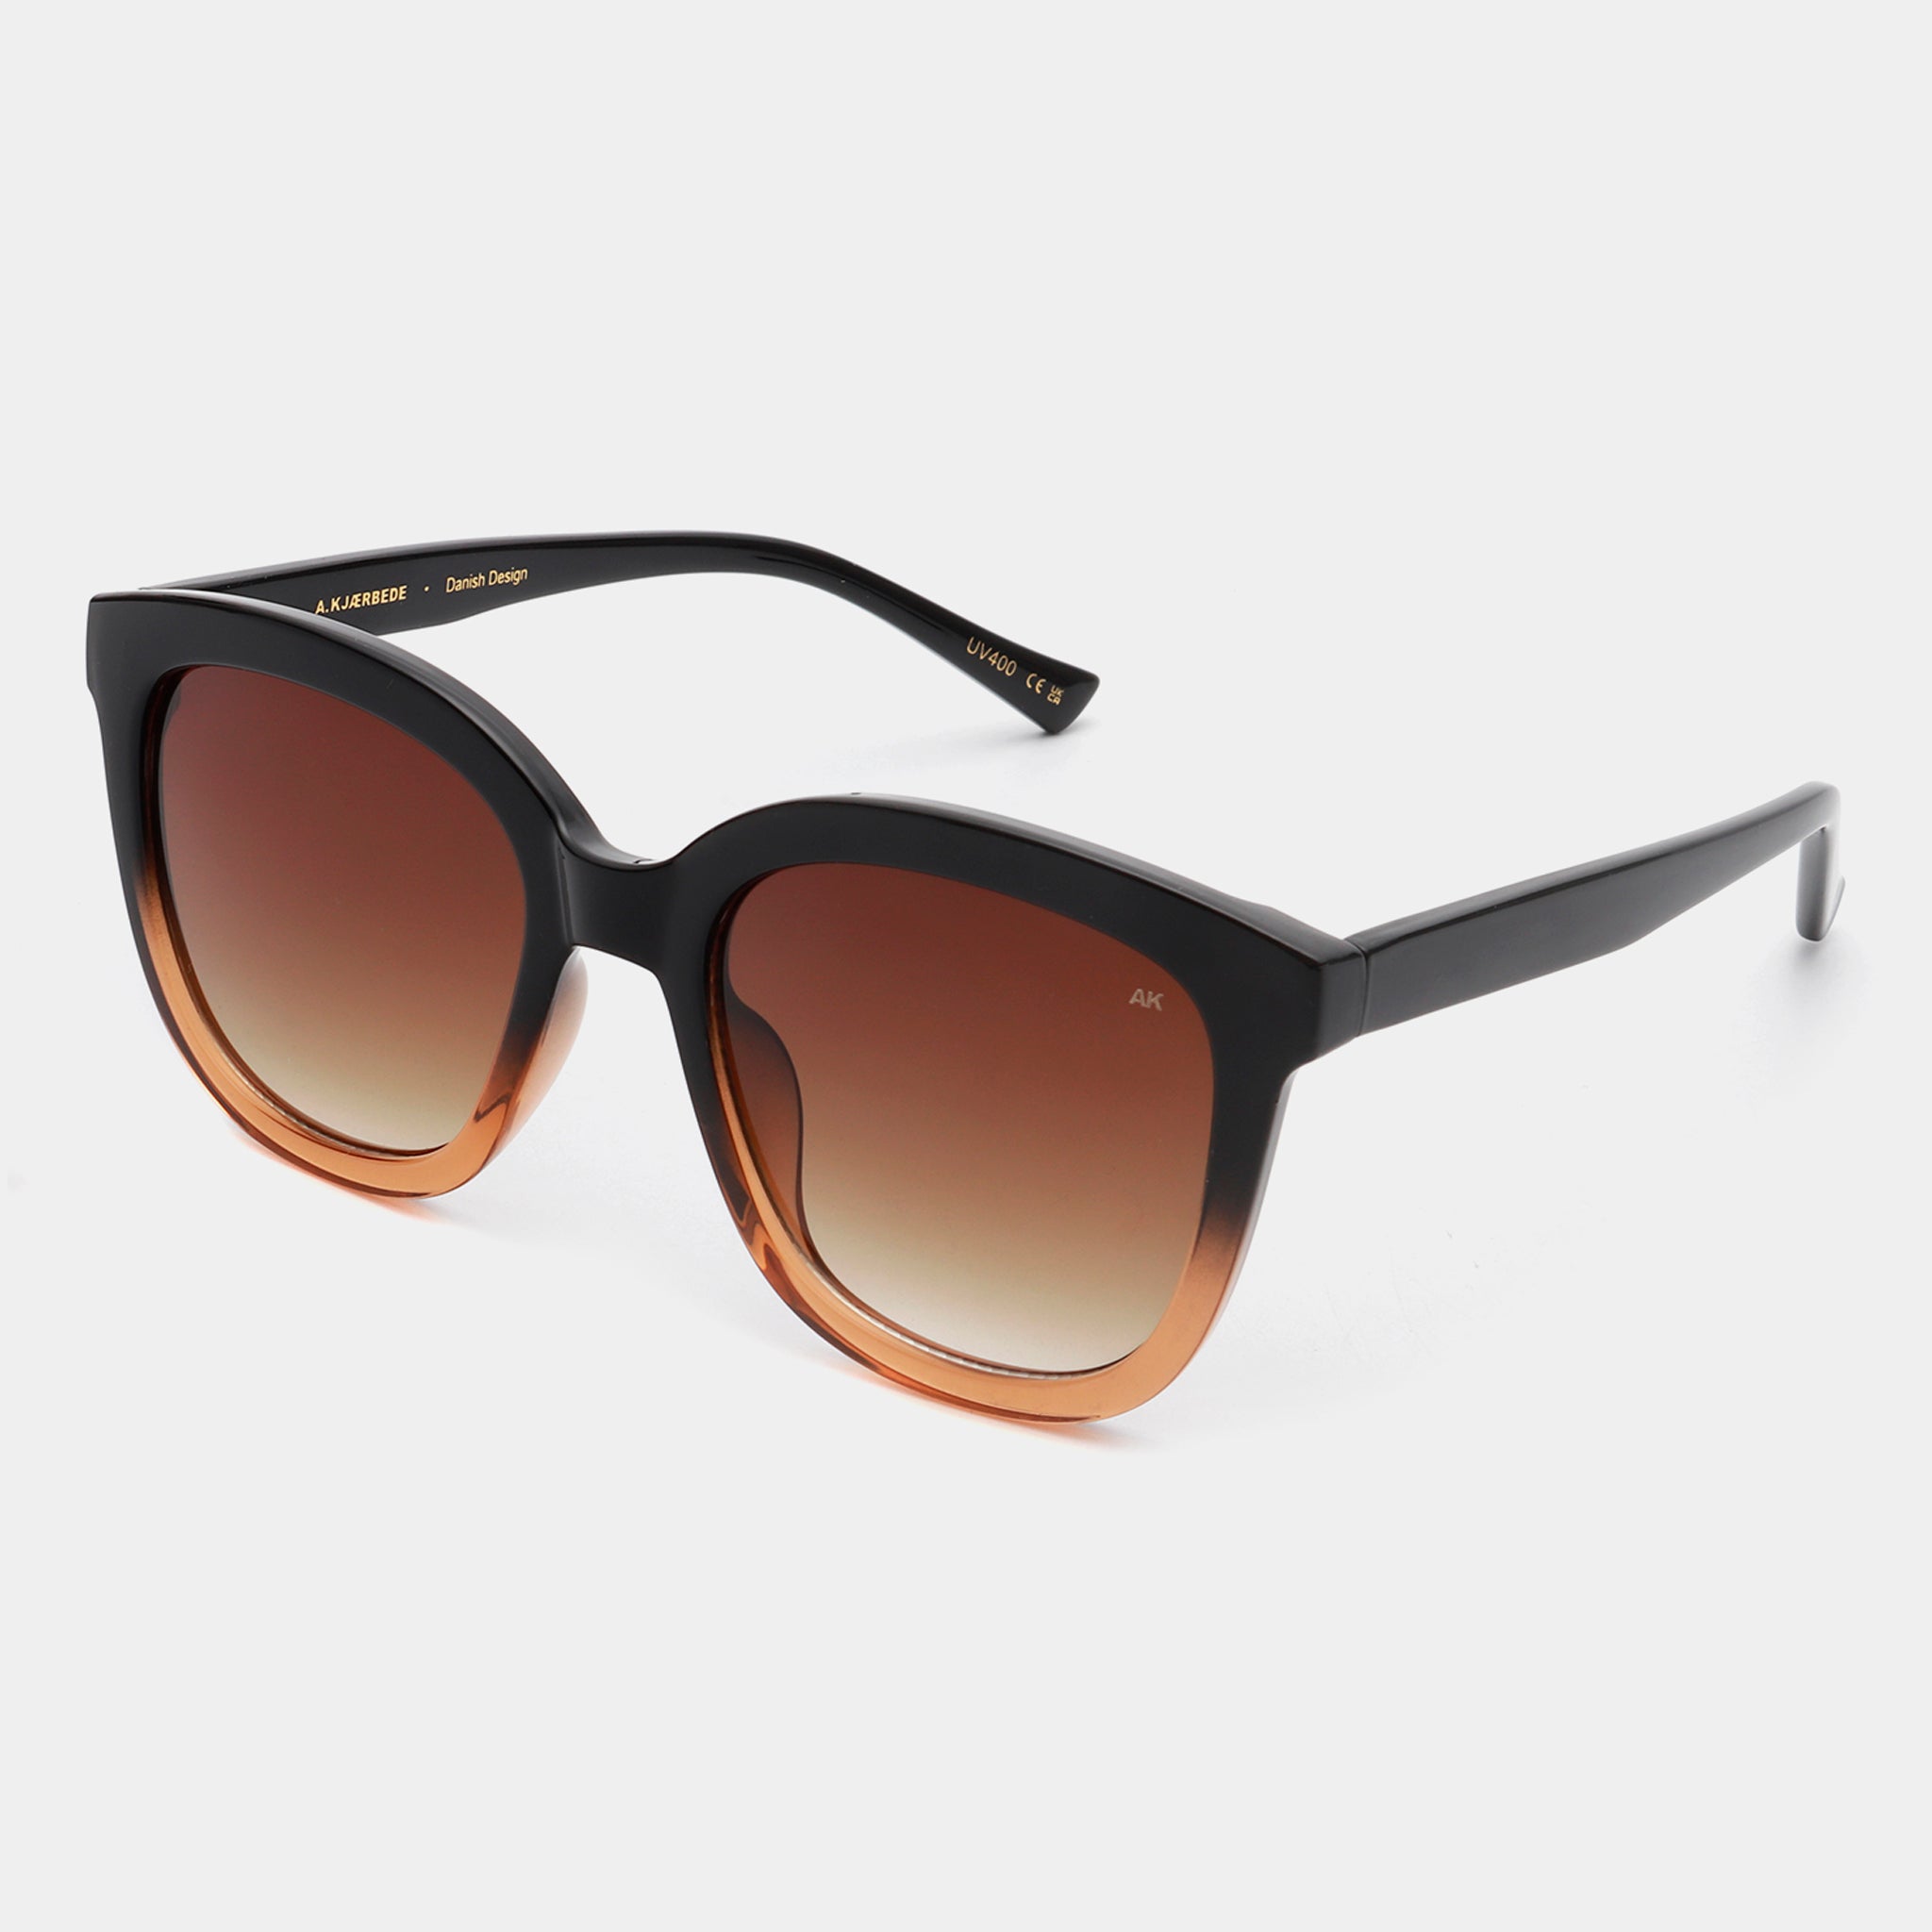 A.Kjaerbede - Sunglasses Billy- Black/Brown Transparent